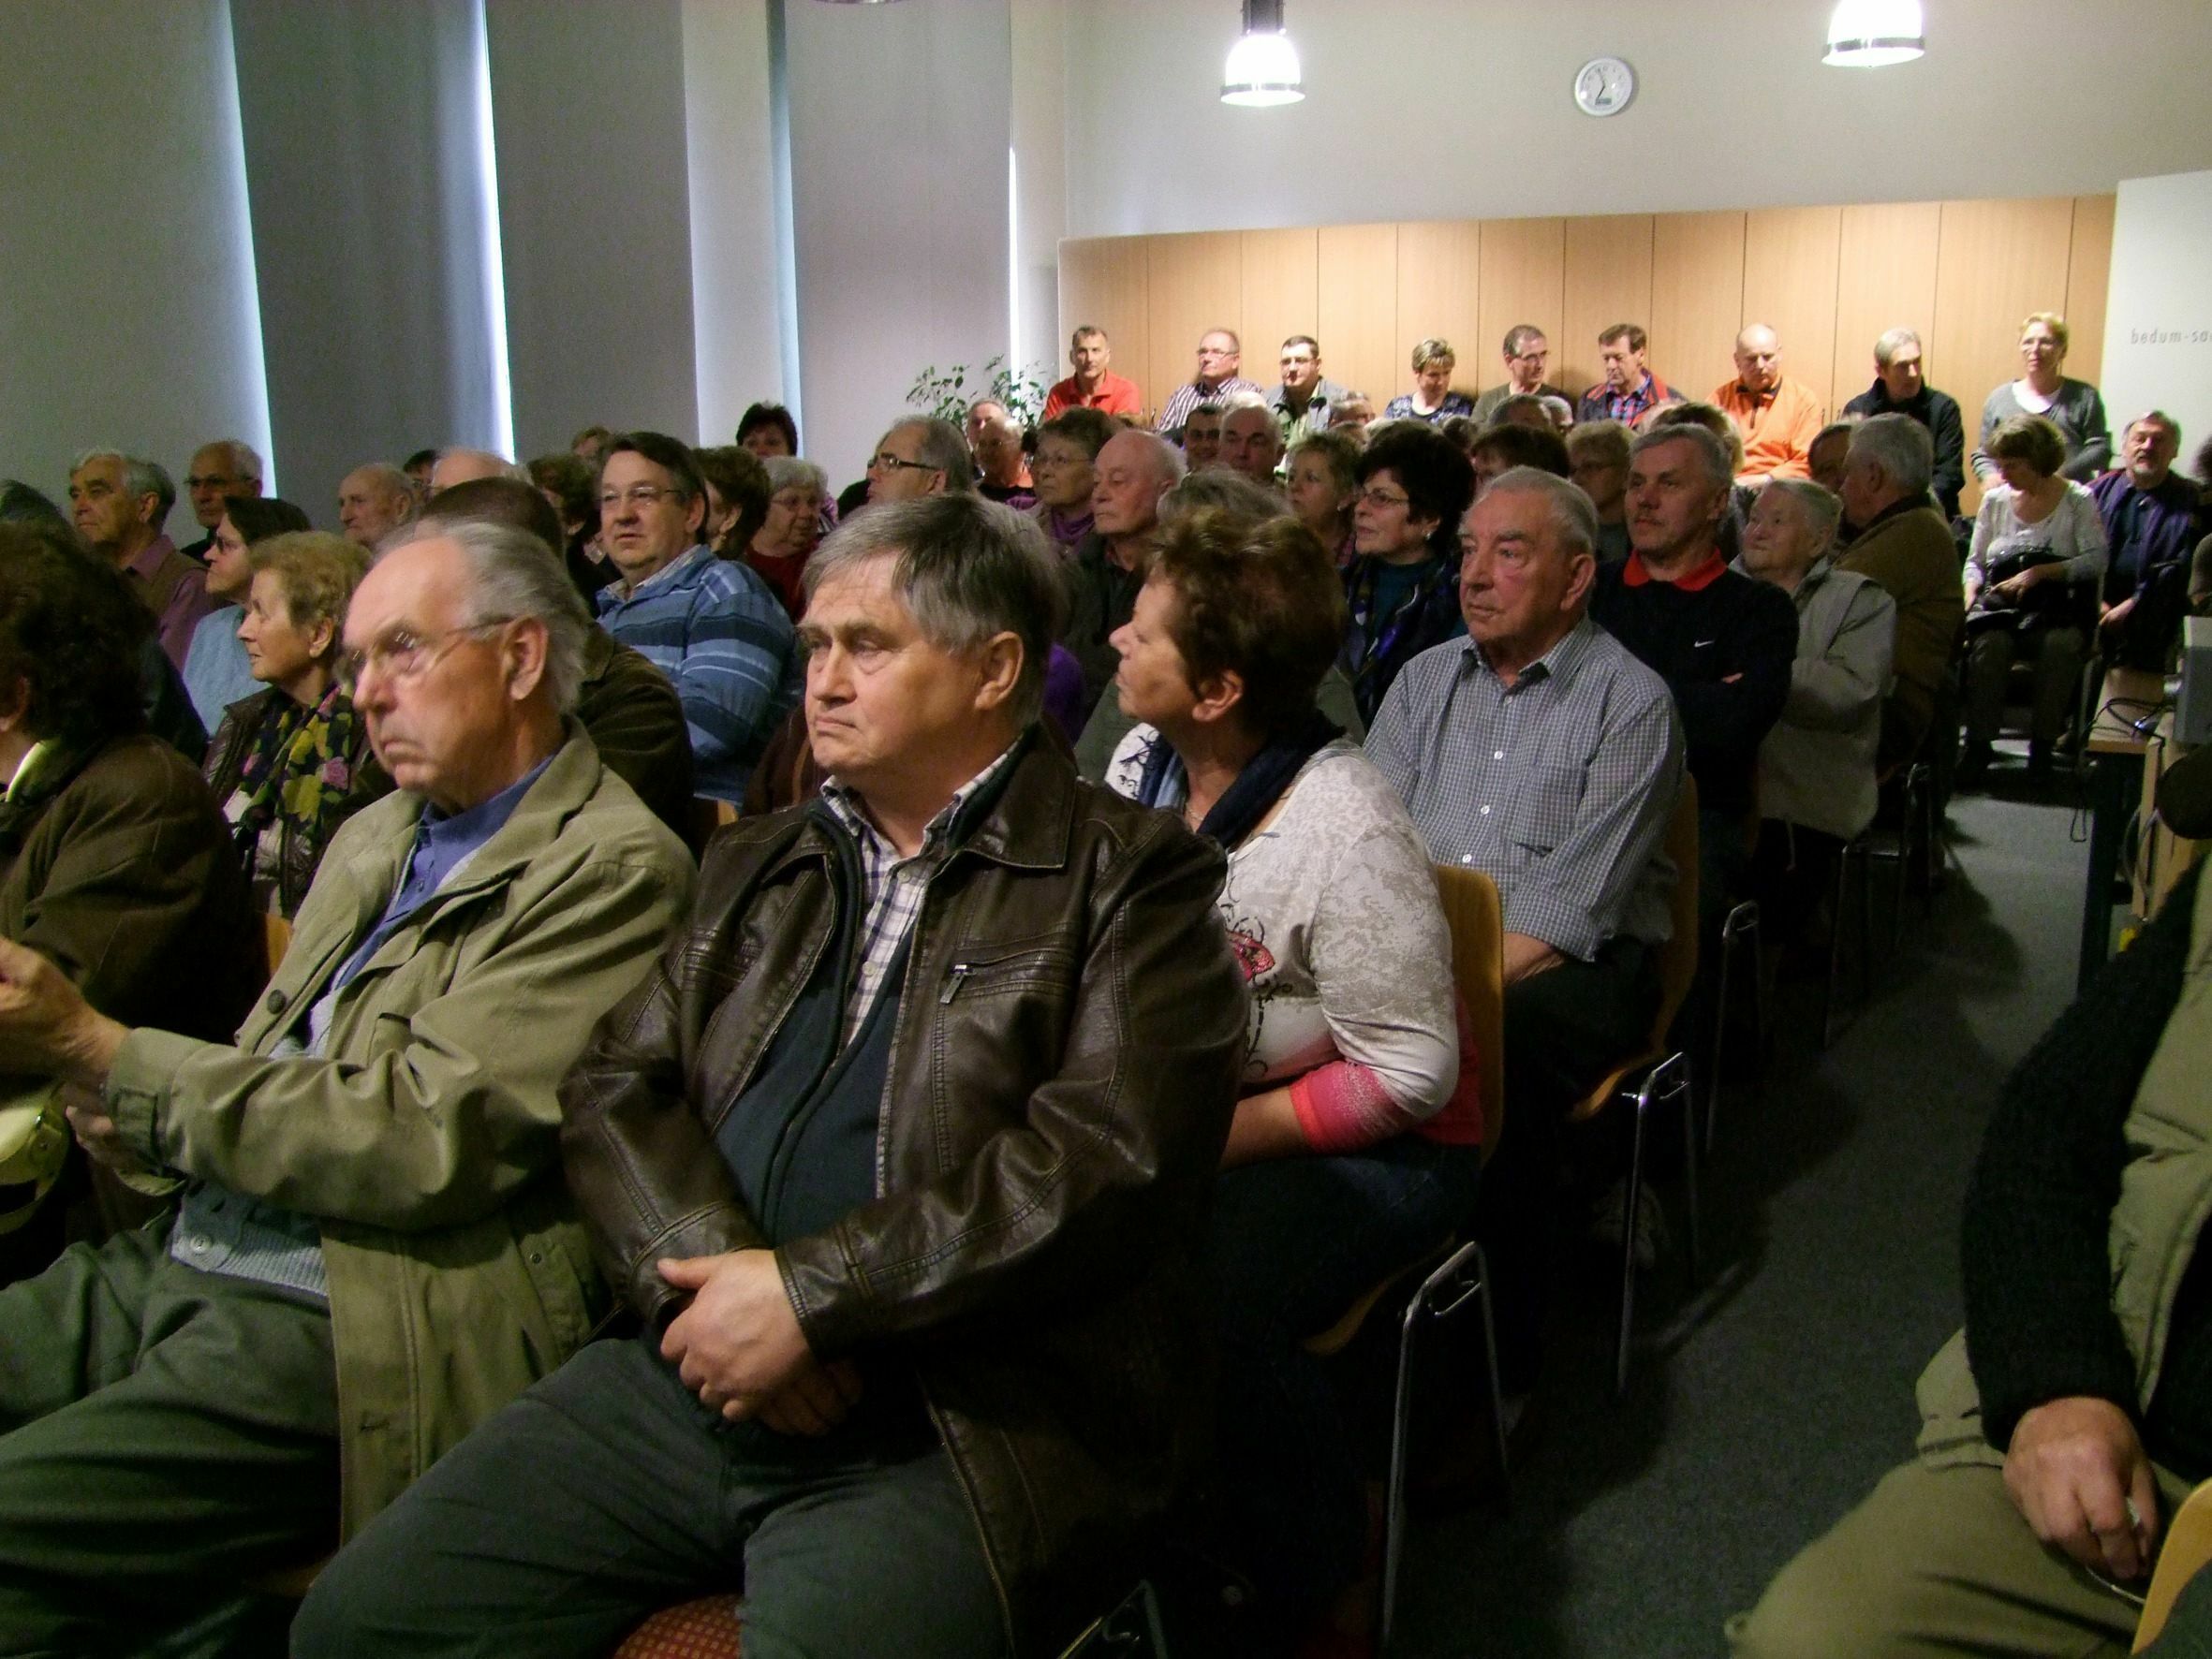 Zuschauer Vortrag, Foto: Historischer Verein zu Peitz e.V., Lizenz: Historischer Verein zu Peitz e.V.